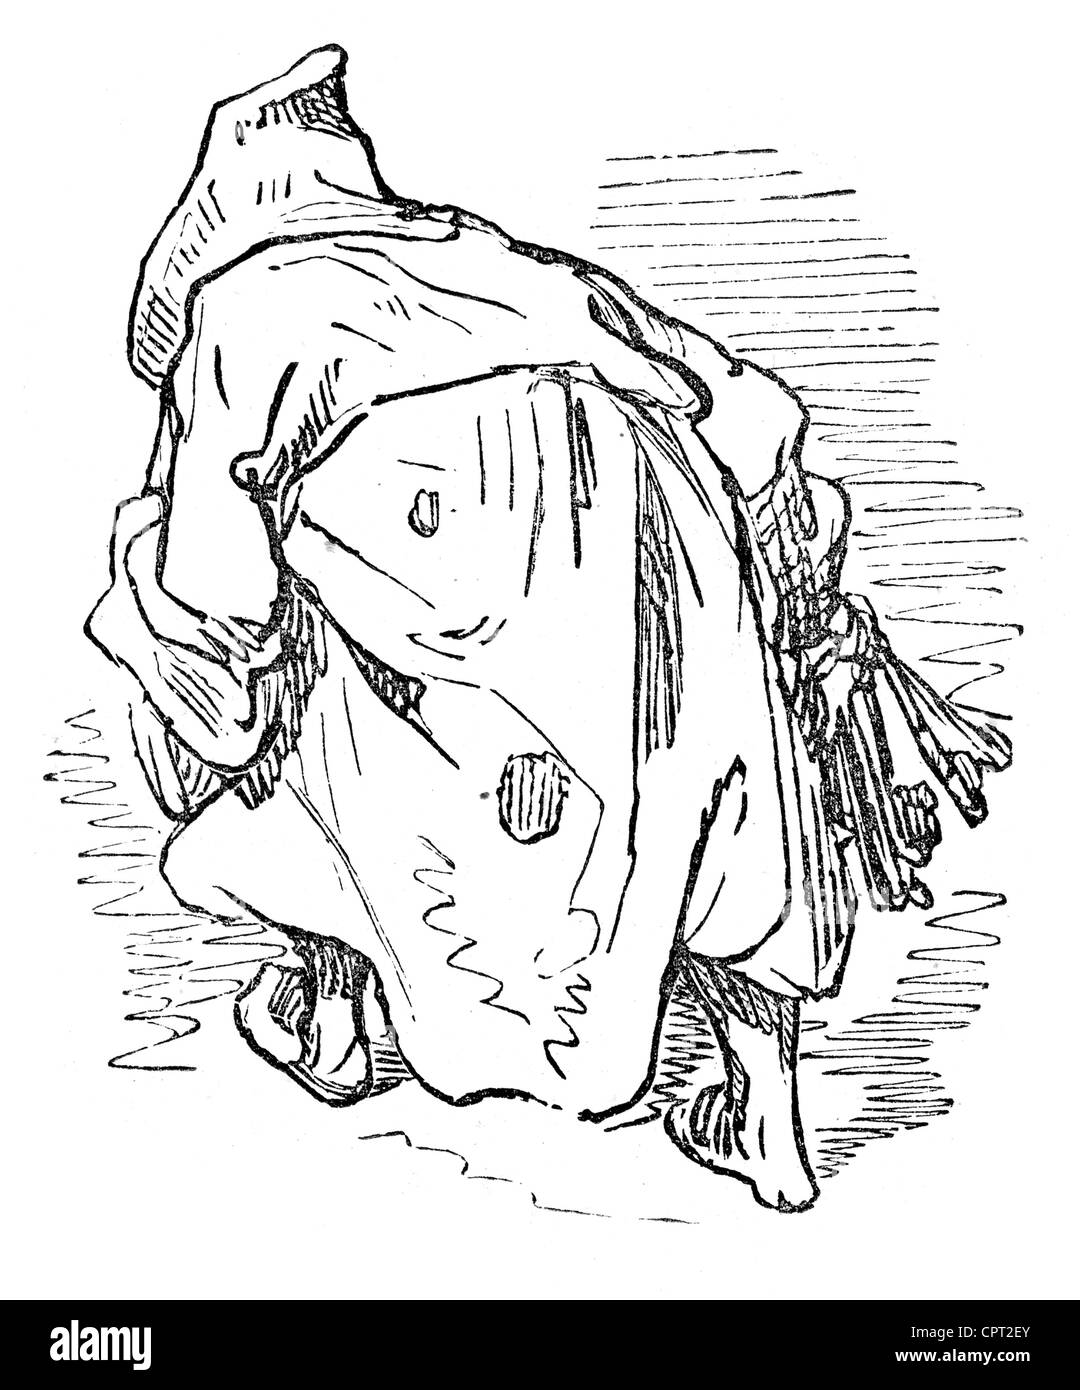 Hunald quitte le monastère - Illustration de la légende de Croquemitaine par Gustave Doré Banque D'Images